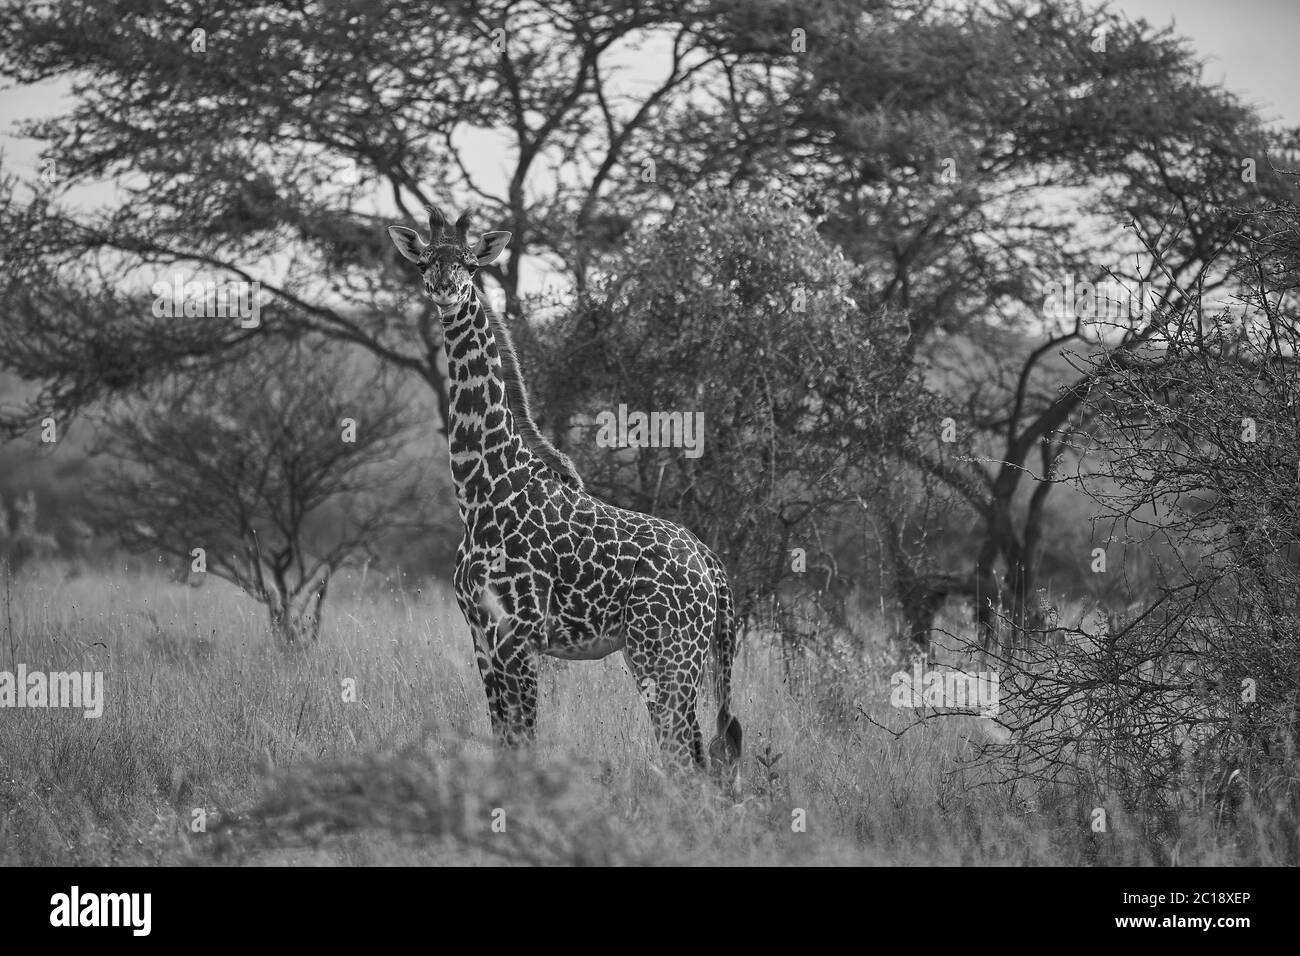 Giraffe Africa Giraffa Safari Big Five Africa Stock Photo